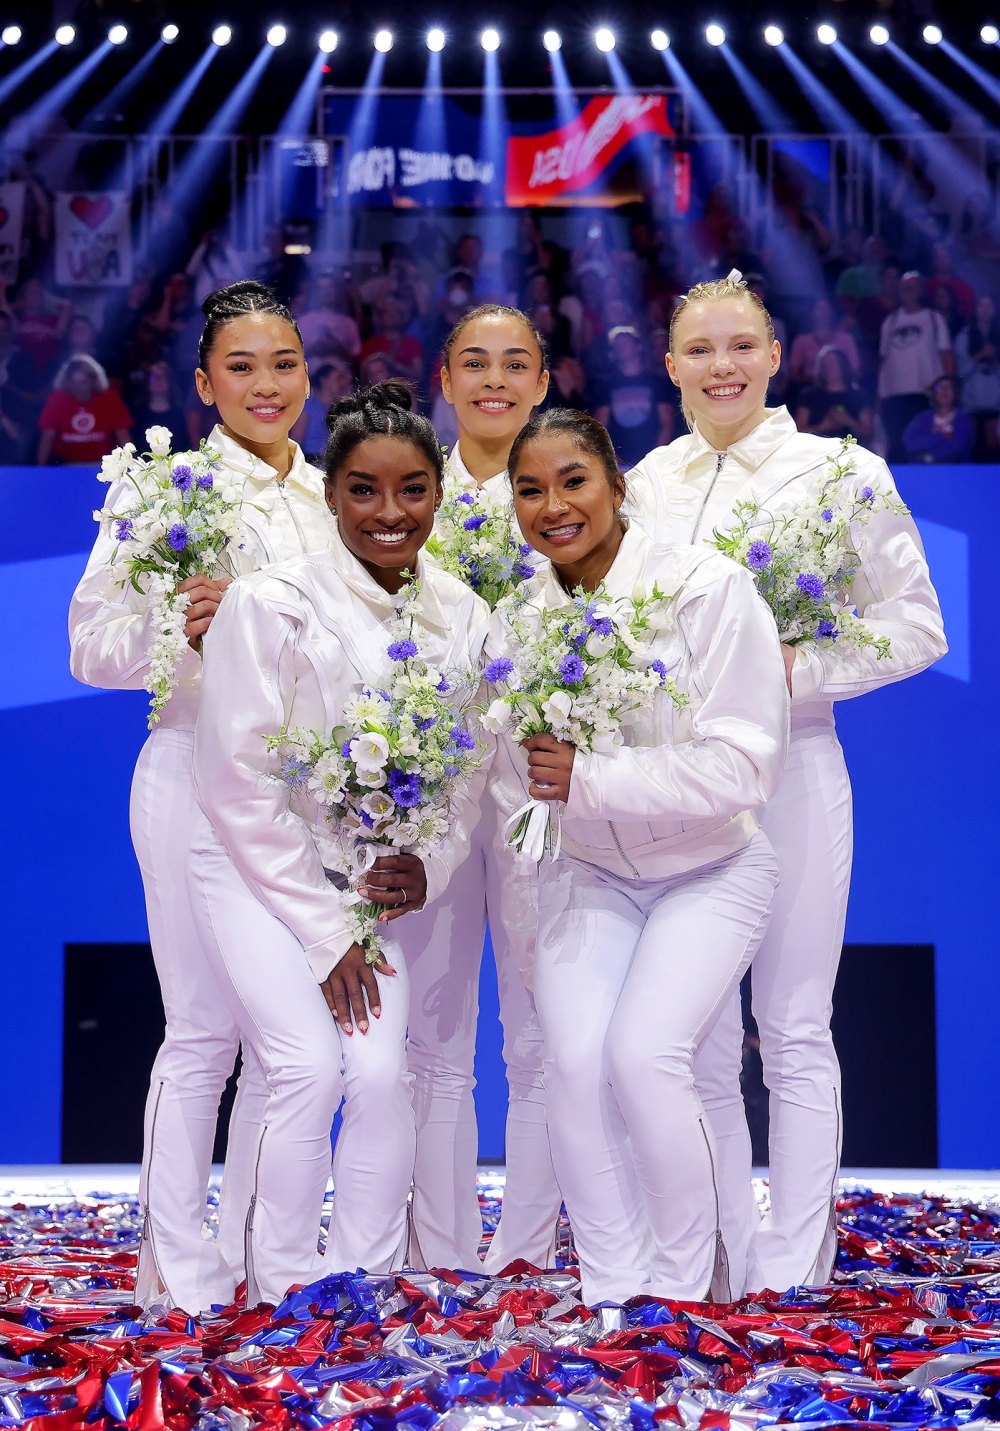 Hoda Kotb ausente de hoje para sair com a equipe de ginástica olímpica feminina dos EUA Suni Lee, Simone Biles, Hezly Rivera, Jordan Chiles e Jade Carey